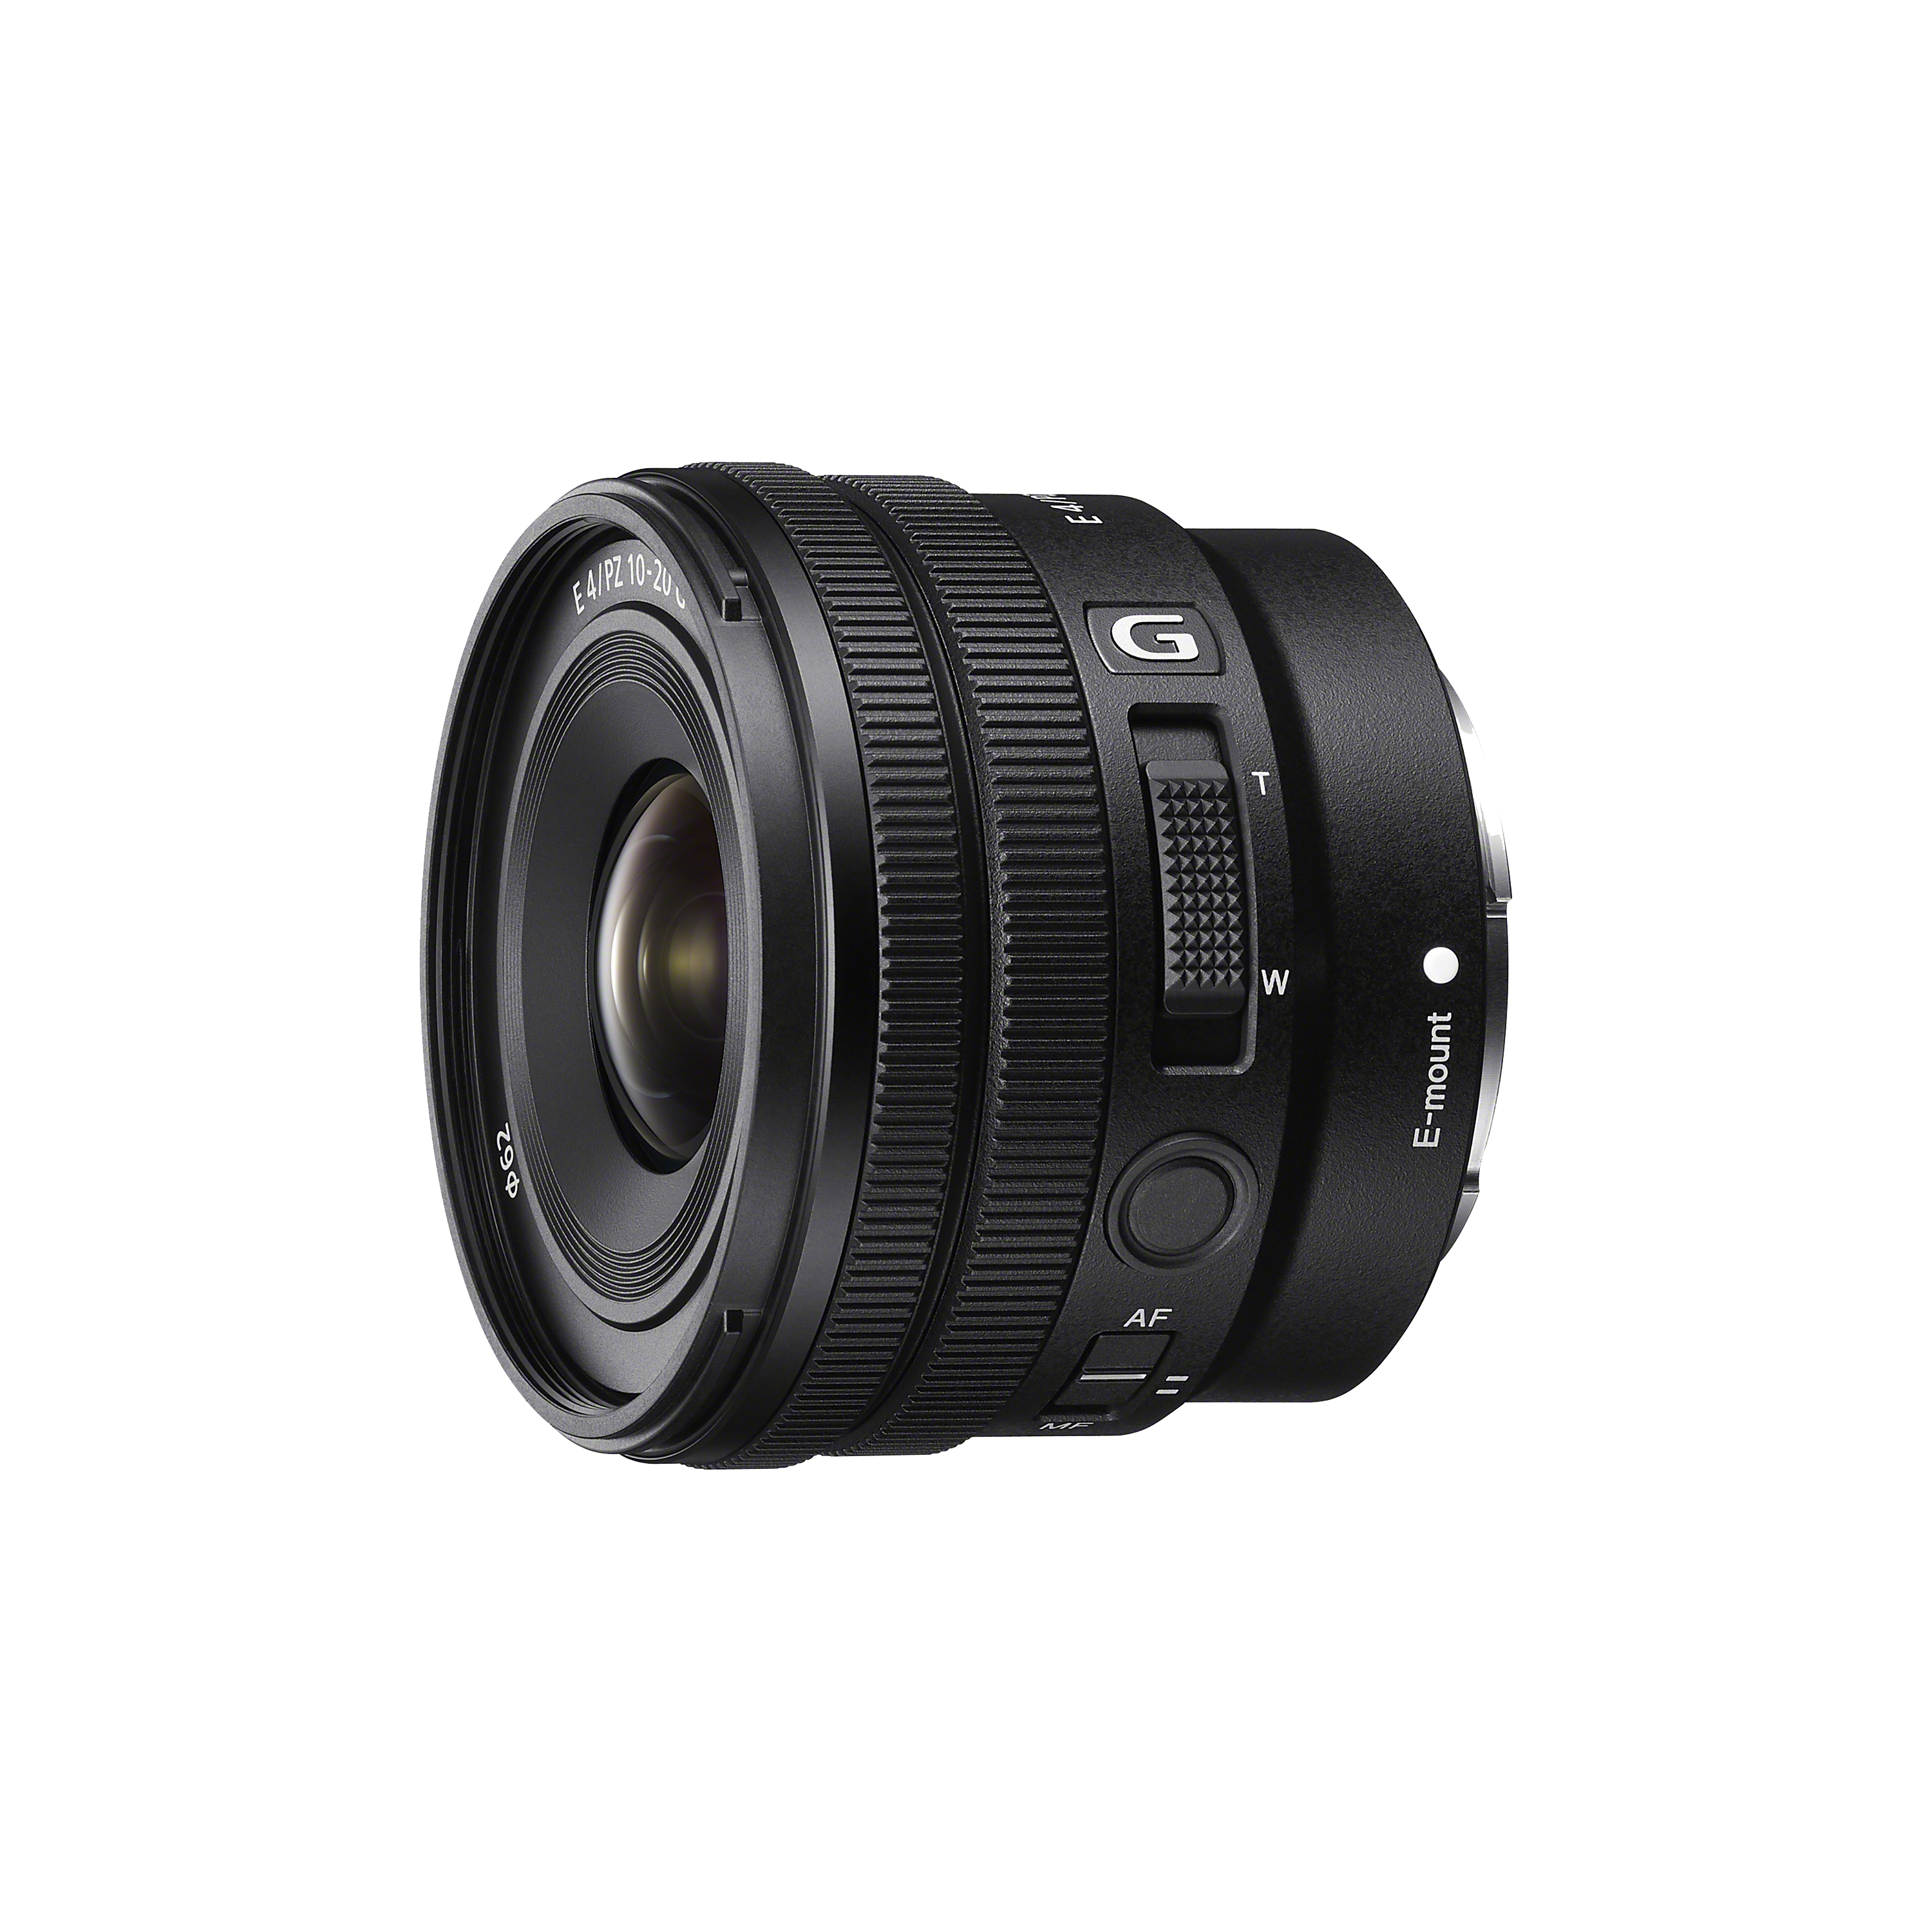 SELP1020G - E PZ 10-20 mm F4 G (E 接環專屬鏡頭) - Sony 台灣官方 